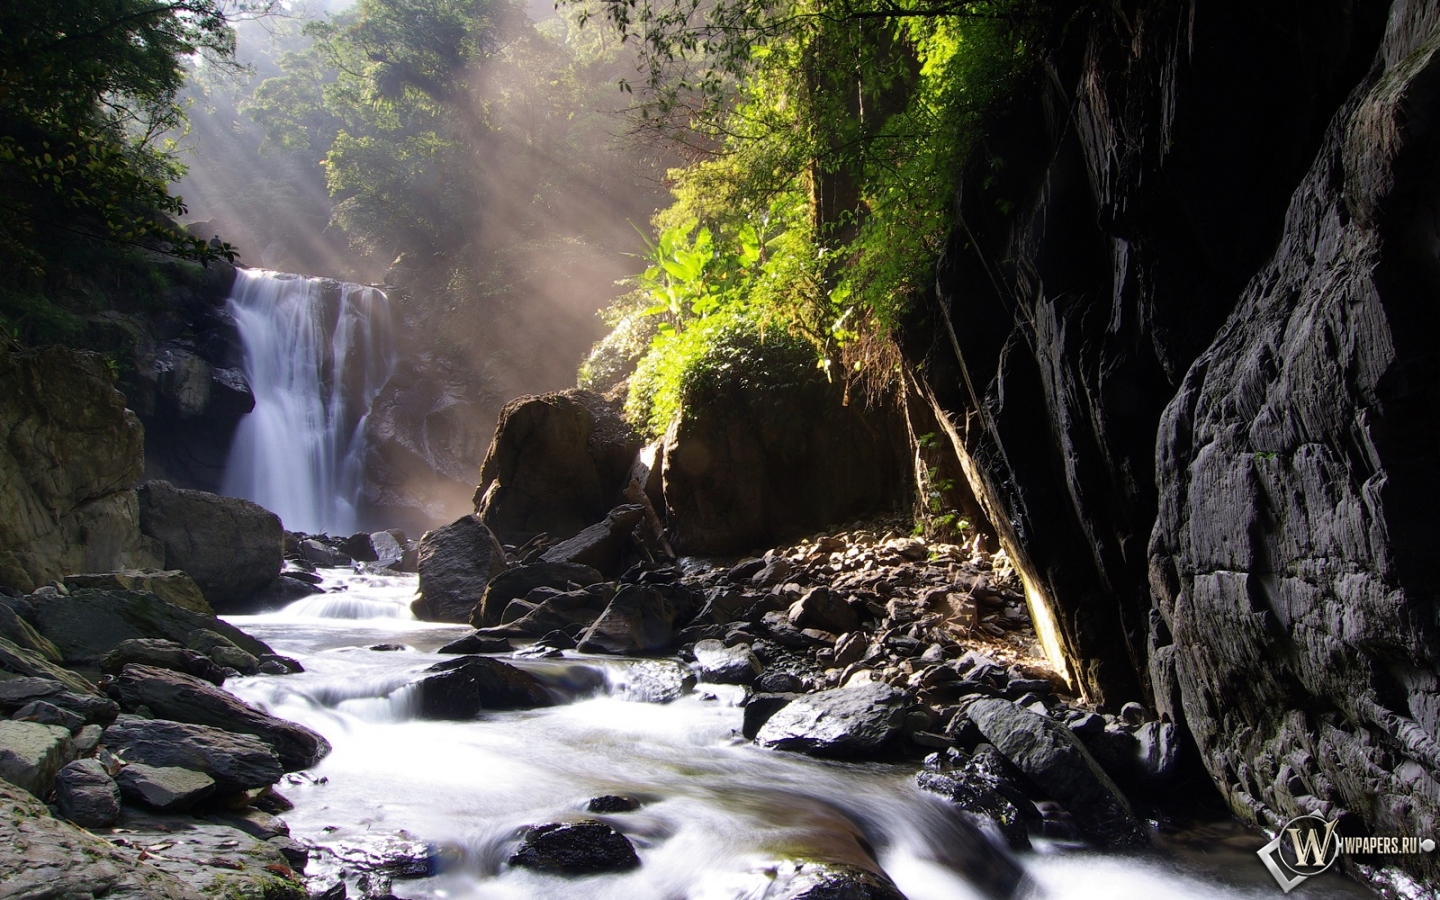 Neidong waterfall 1440x900